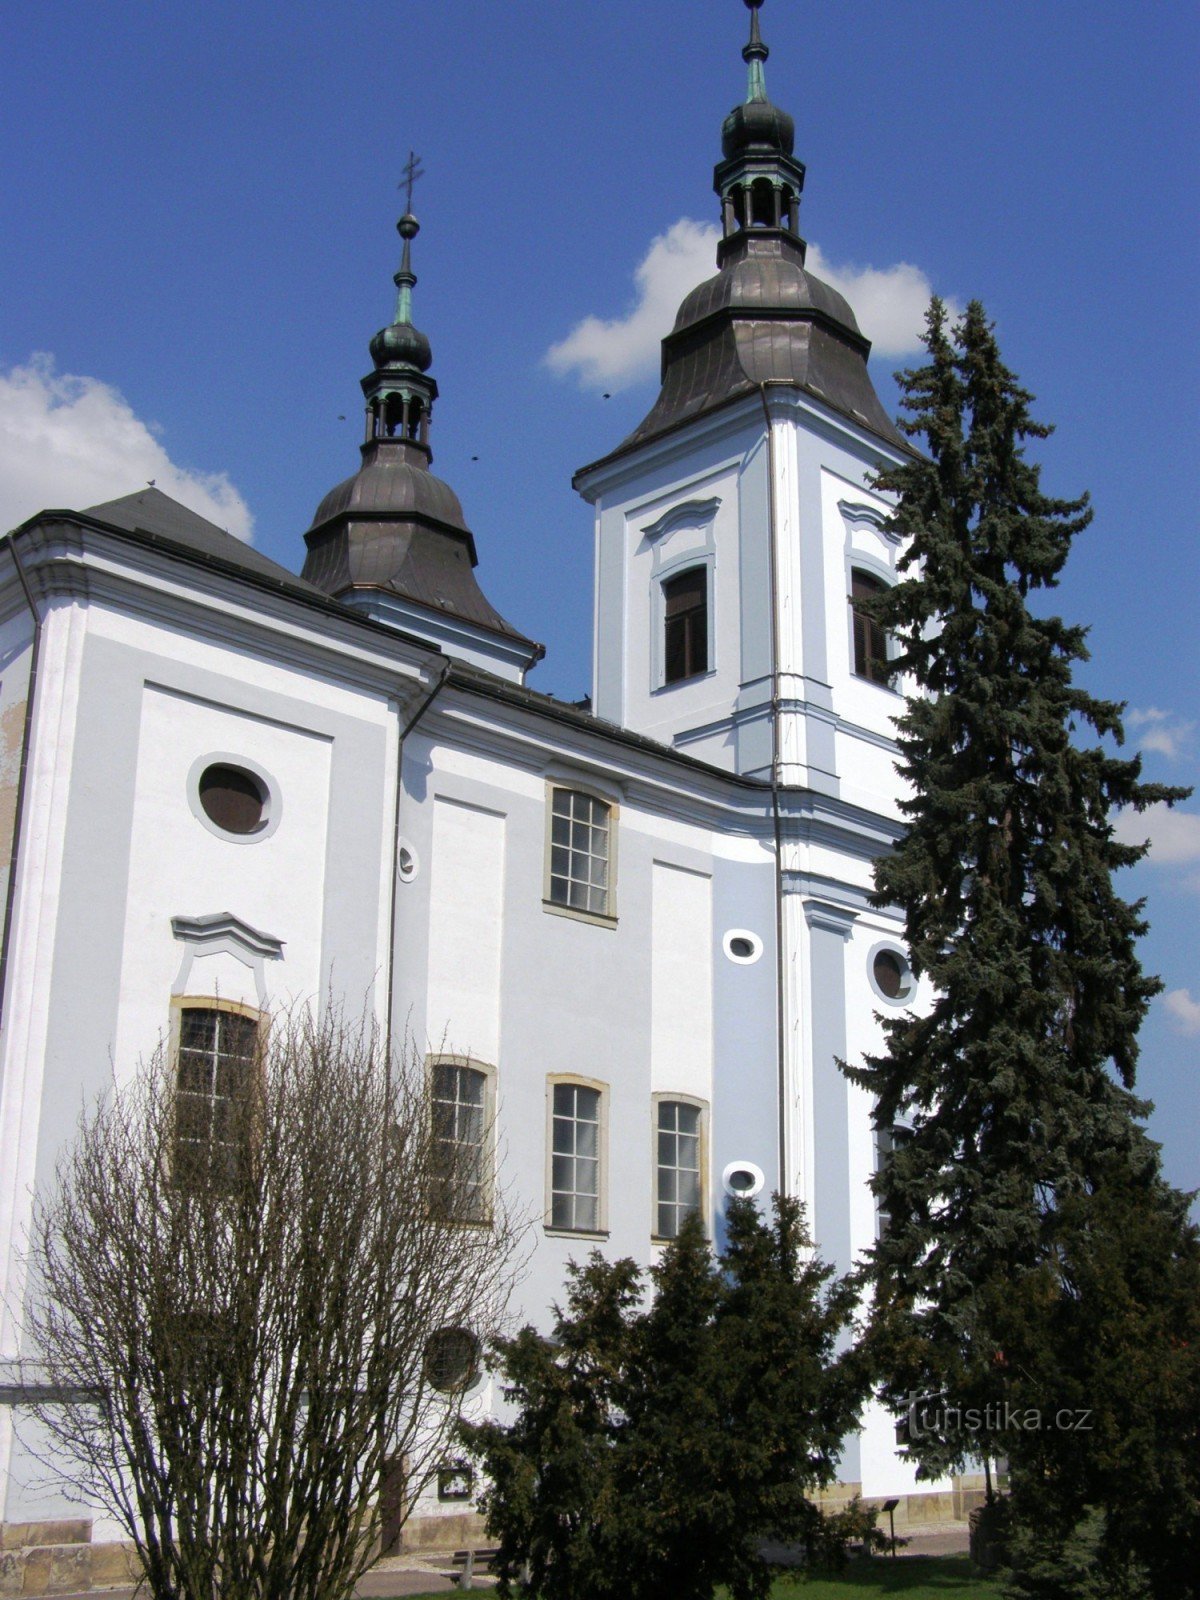 ジャンベルク - 聖教会ヴァーツラフ